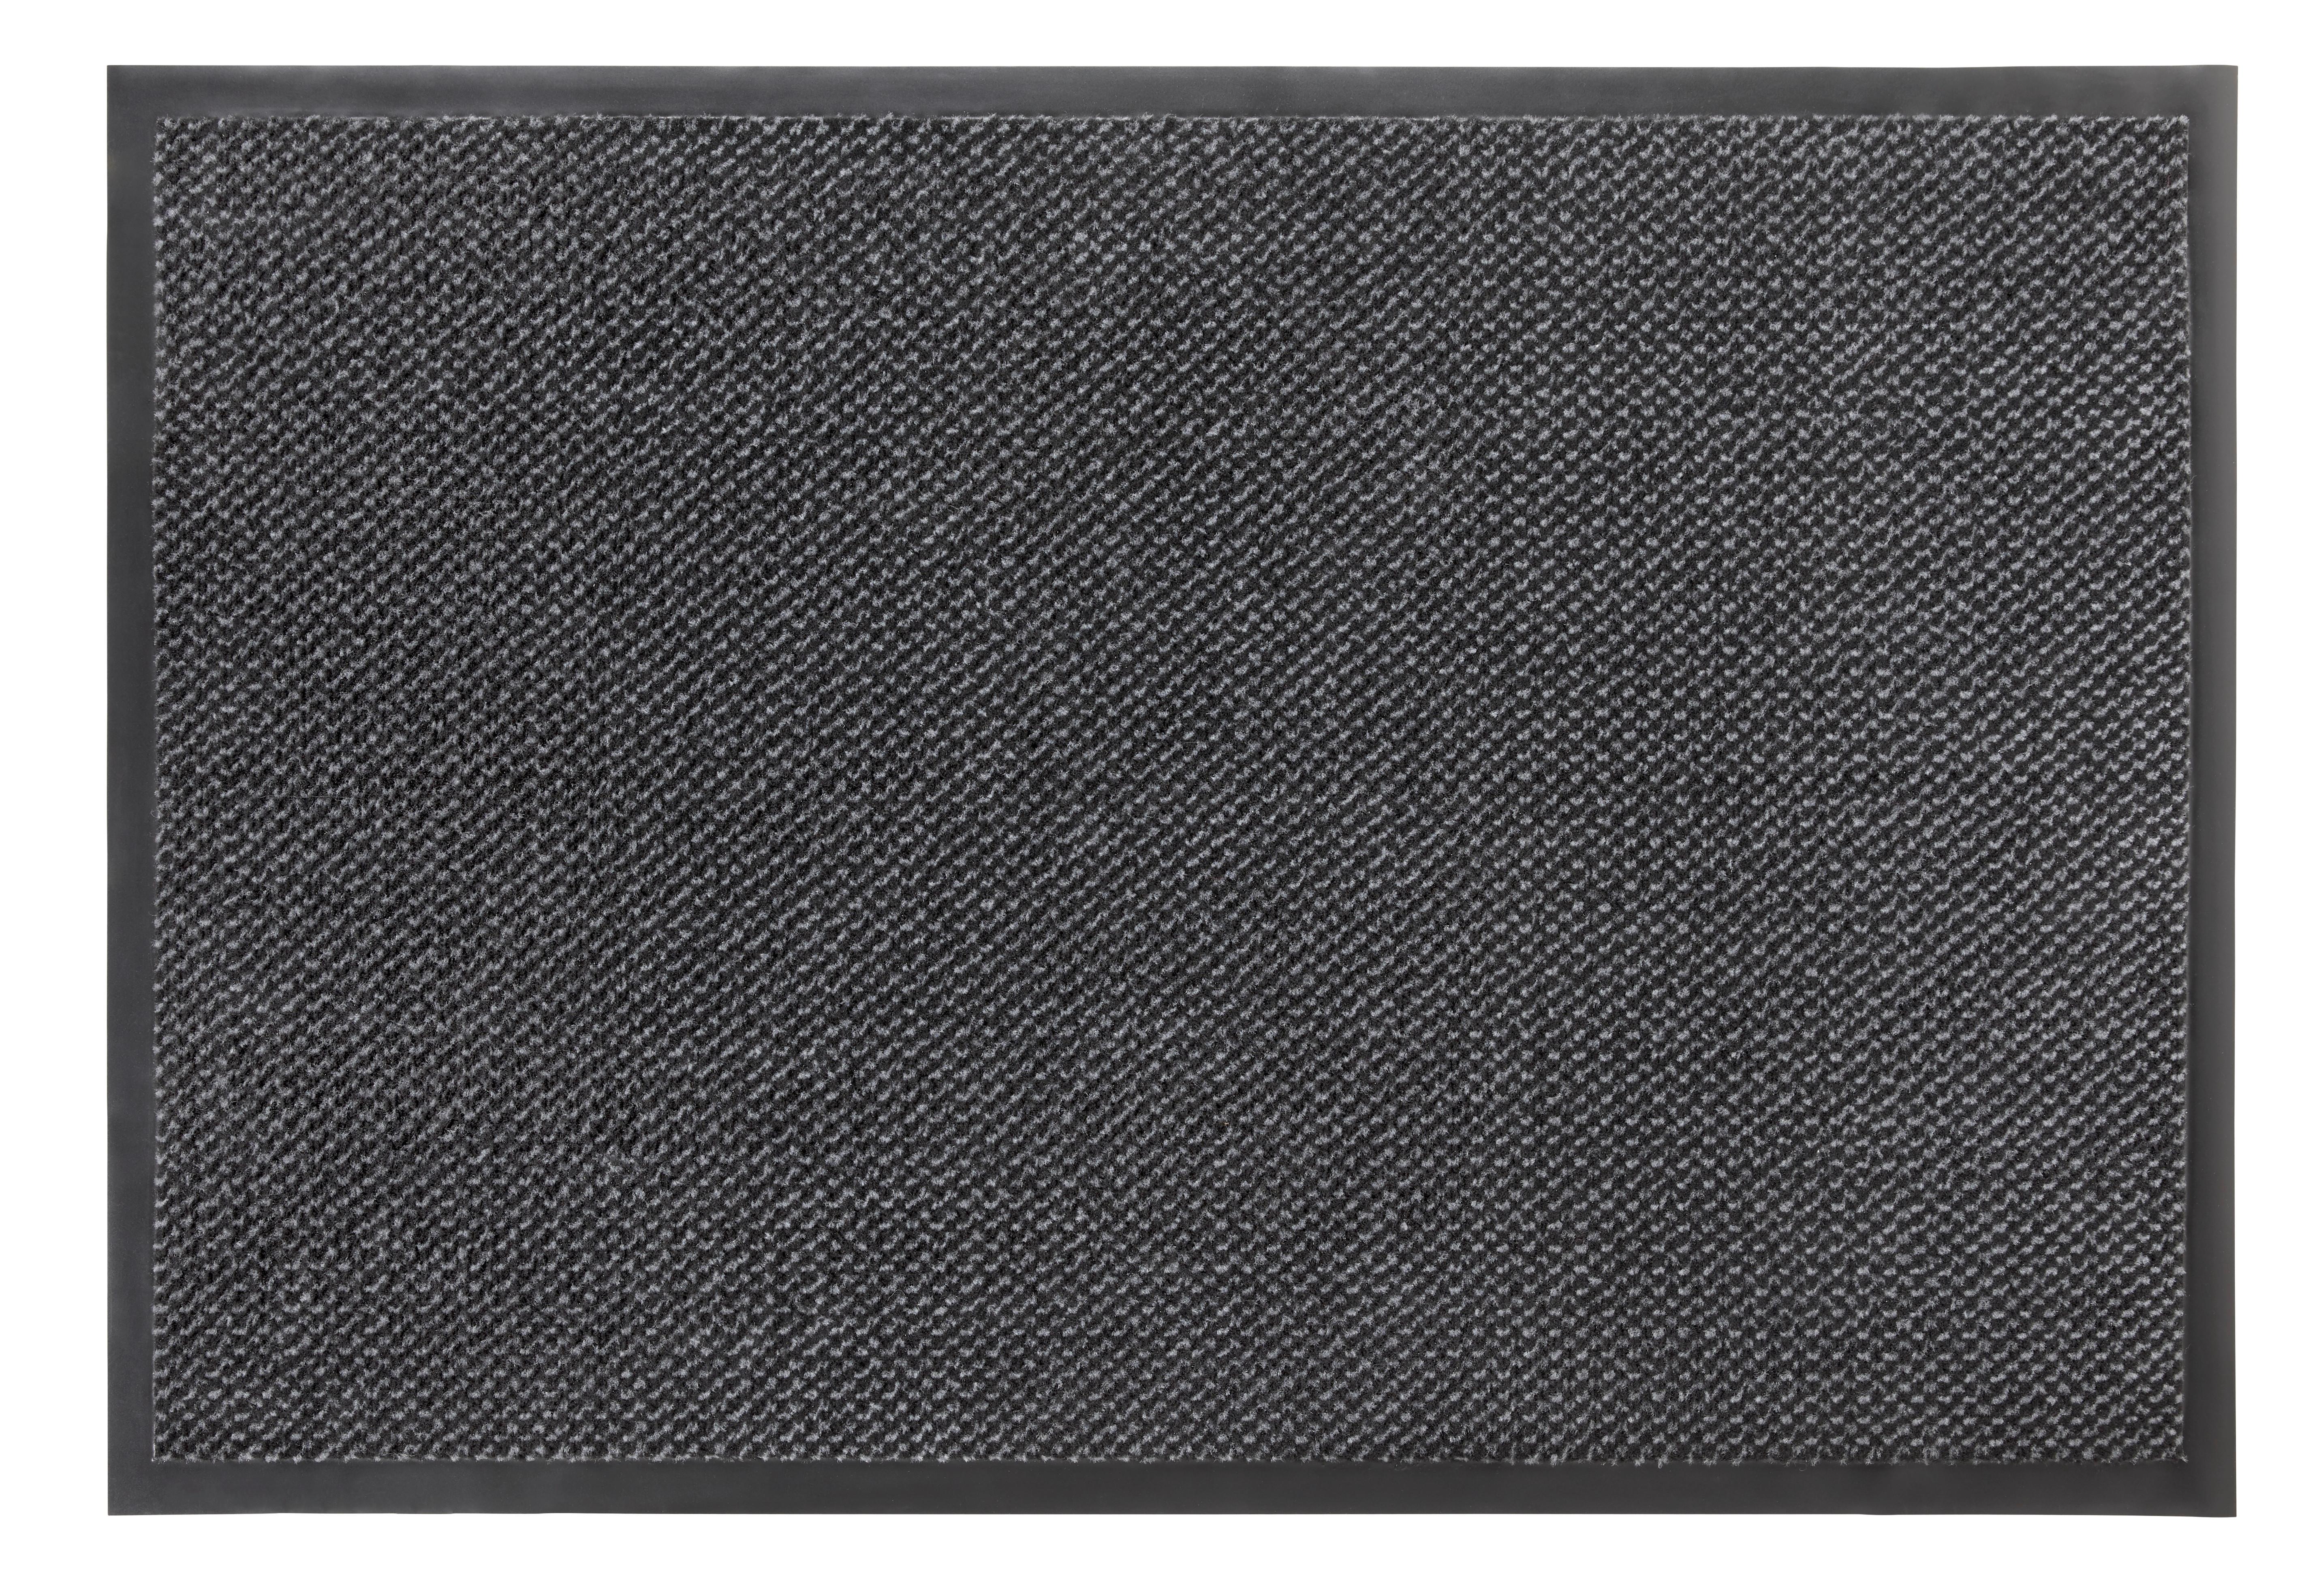 Dveřní Rohožka Hamptons 3, 80/120cm - šedá/černá, Konvenční, textil (80/120cm) - Modern Living